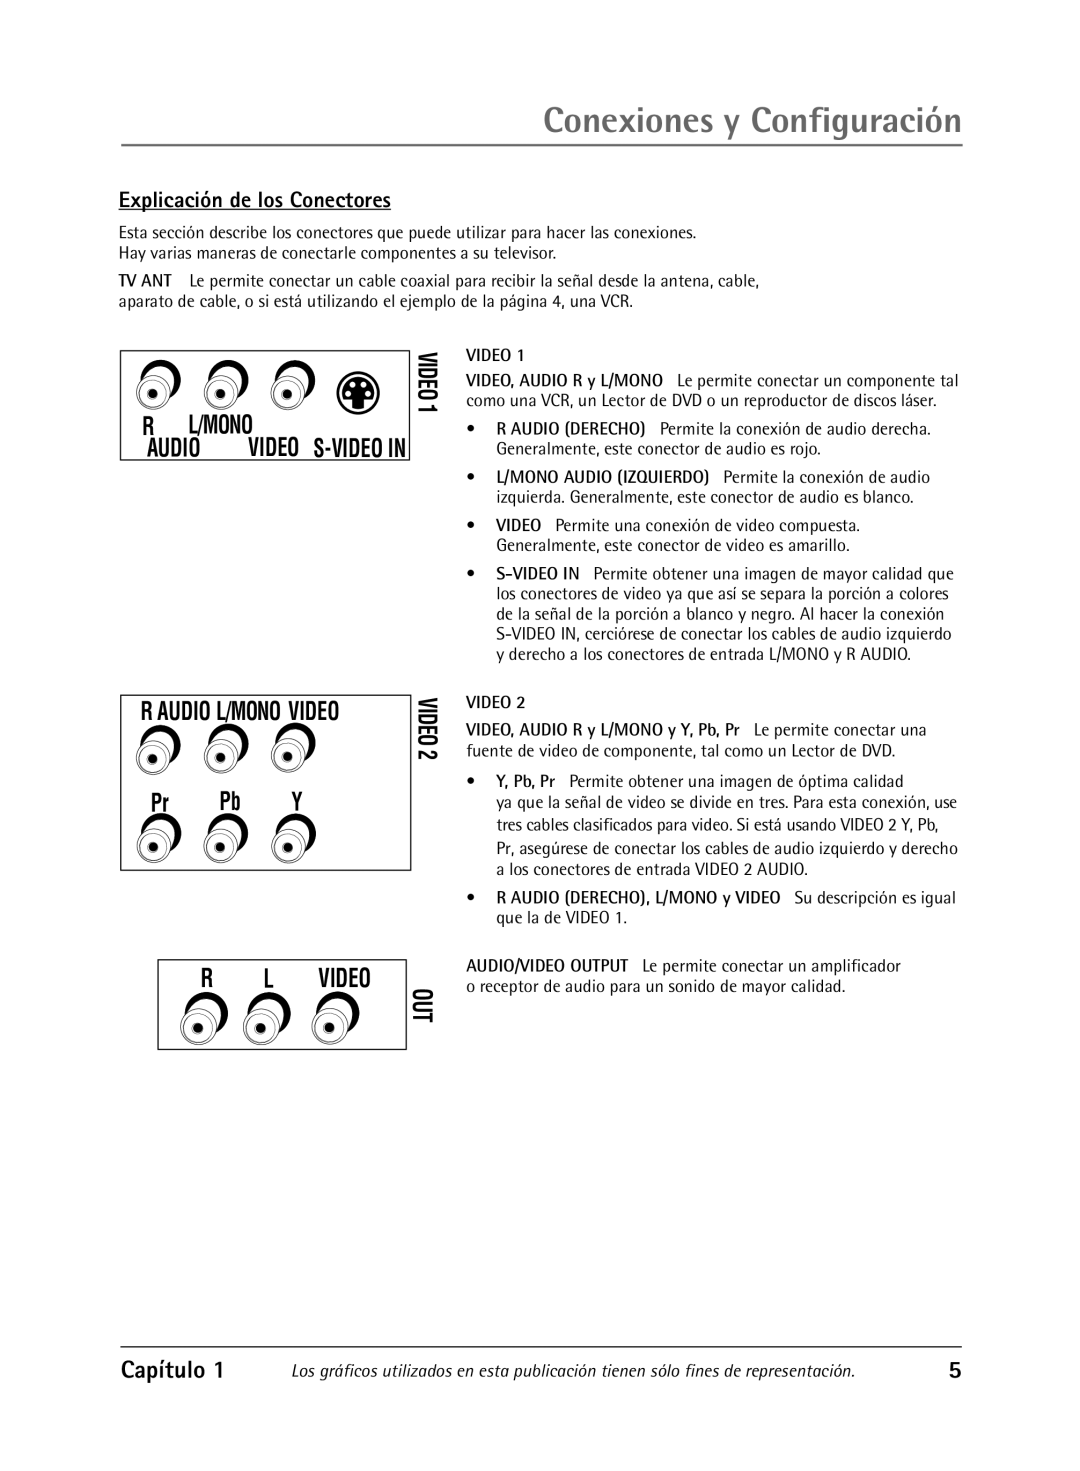 RCA Televison manual Explicación de los Conectores, Conexiones y Configuración, R Audio L/Mono Video, R L Video 